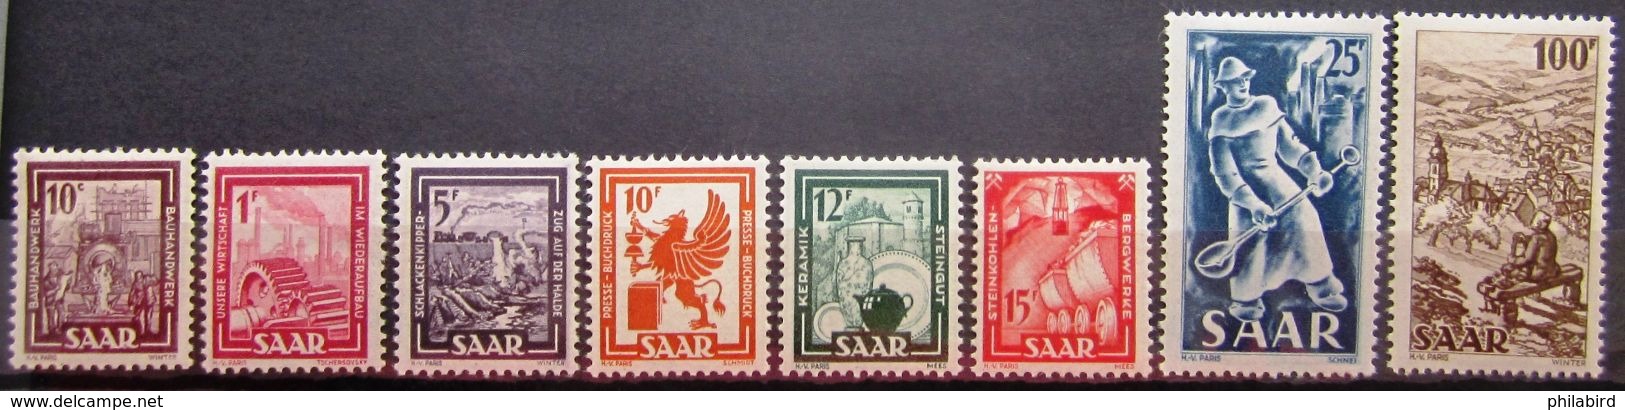 SARRE            N° 255/262         NEUF* - Unused Stamps